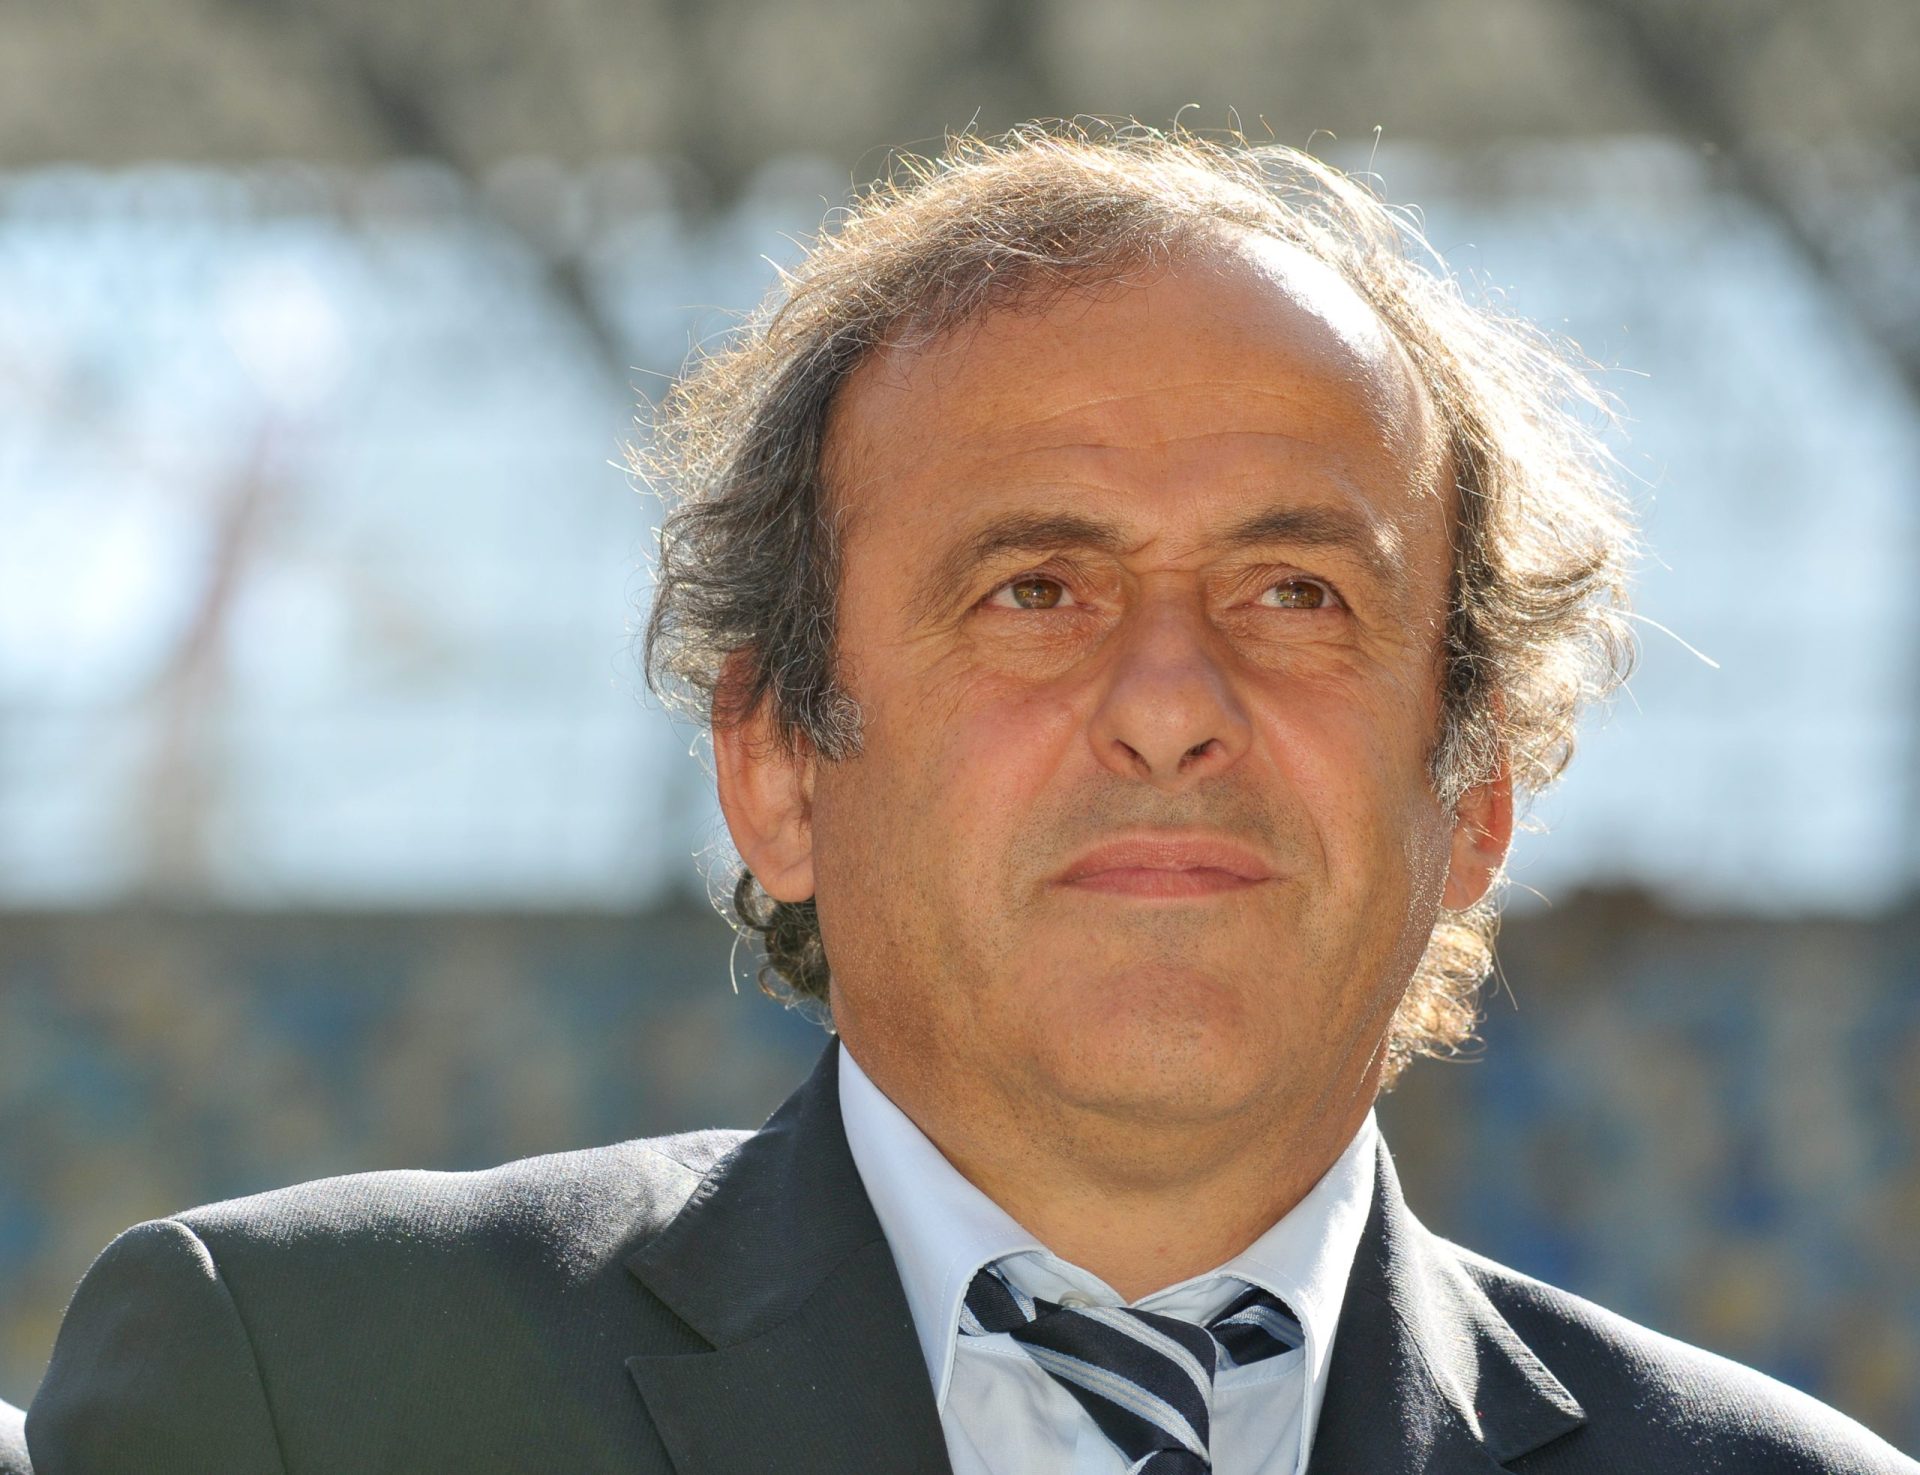 Platini sobre CR7. “Mas será que foi a Juventus a contactá-lo ou o empresário a oferecê-lo?”